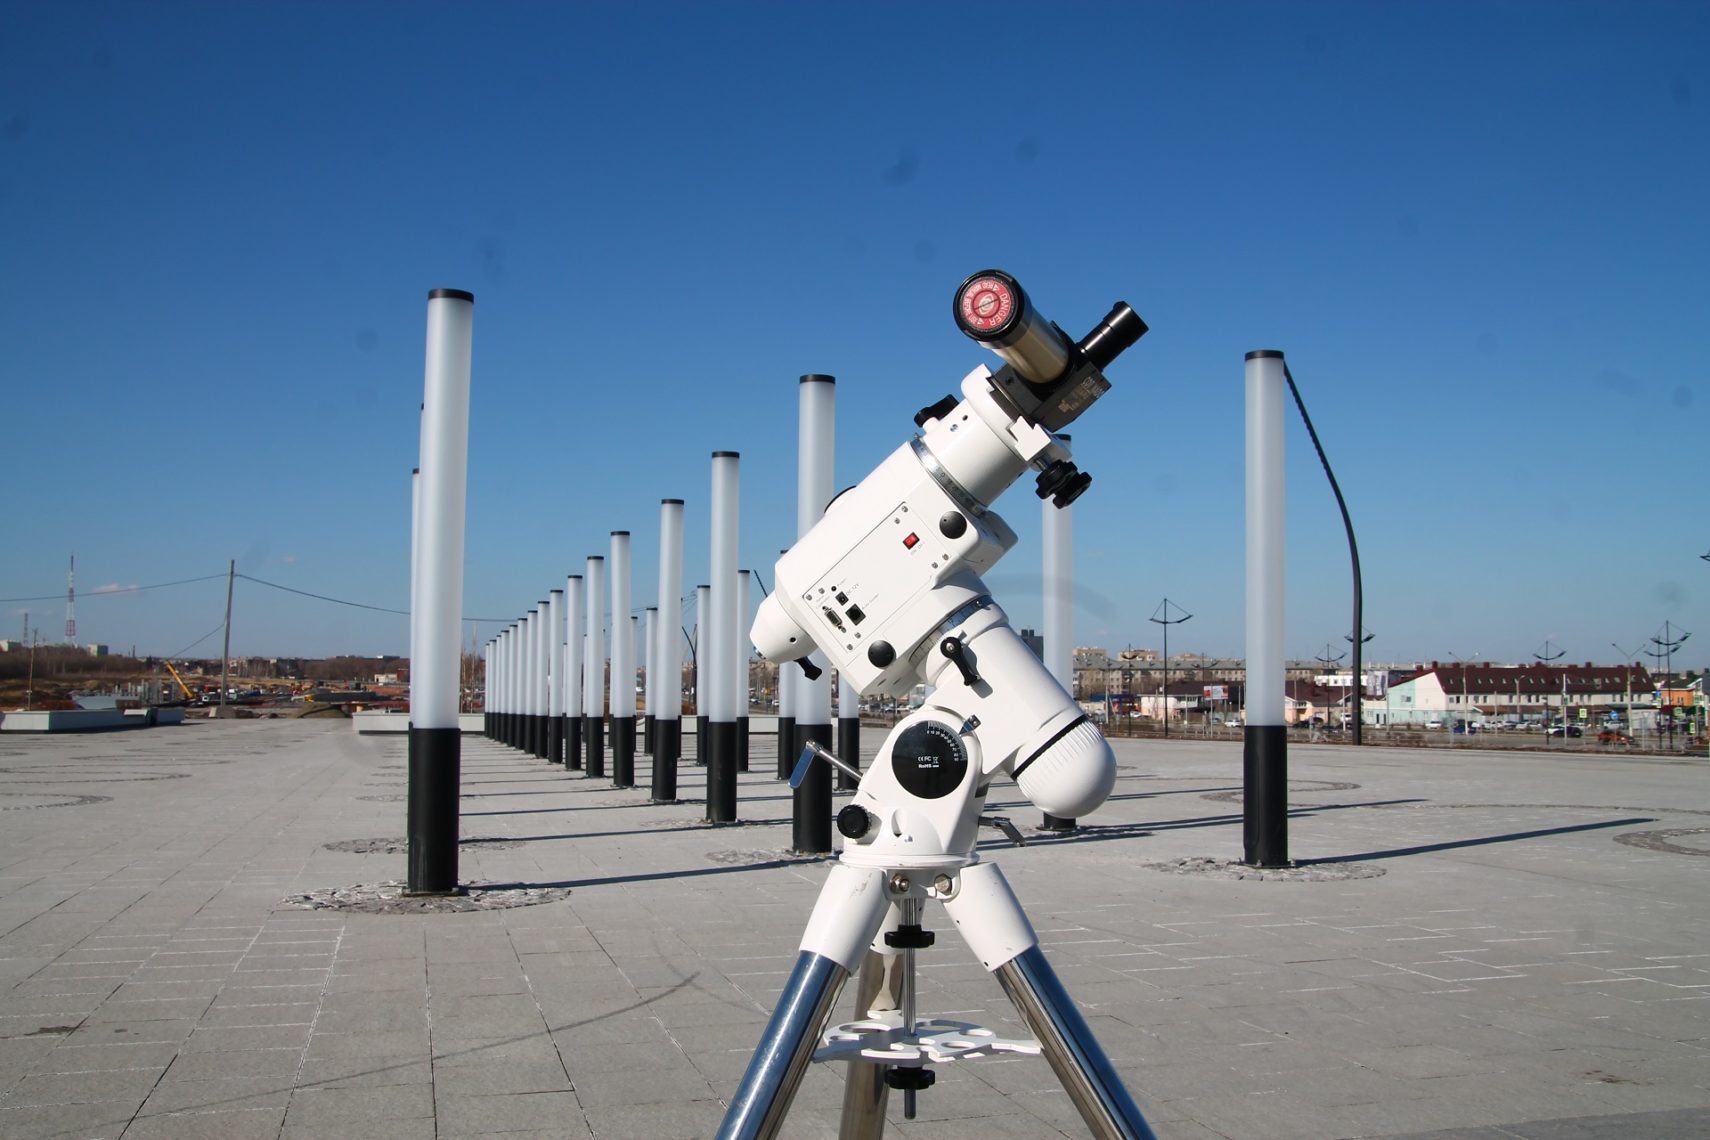 Просто космос! Взглянуть в уникальный телескоп и увидеть масштабную инсталляцию солнечной системы смогли магнитогорцы в парке «Притяжение»